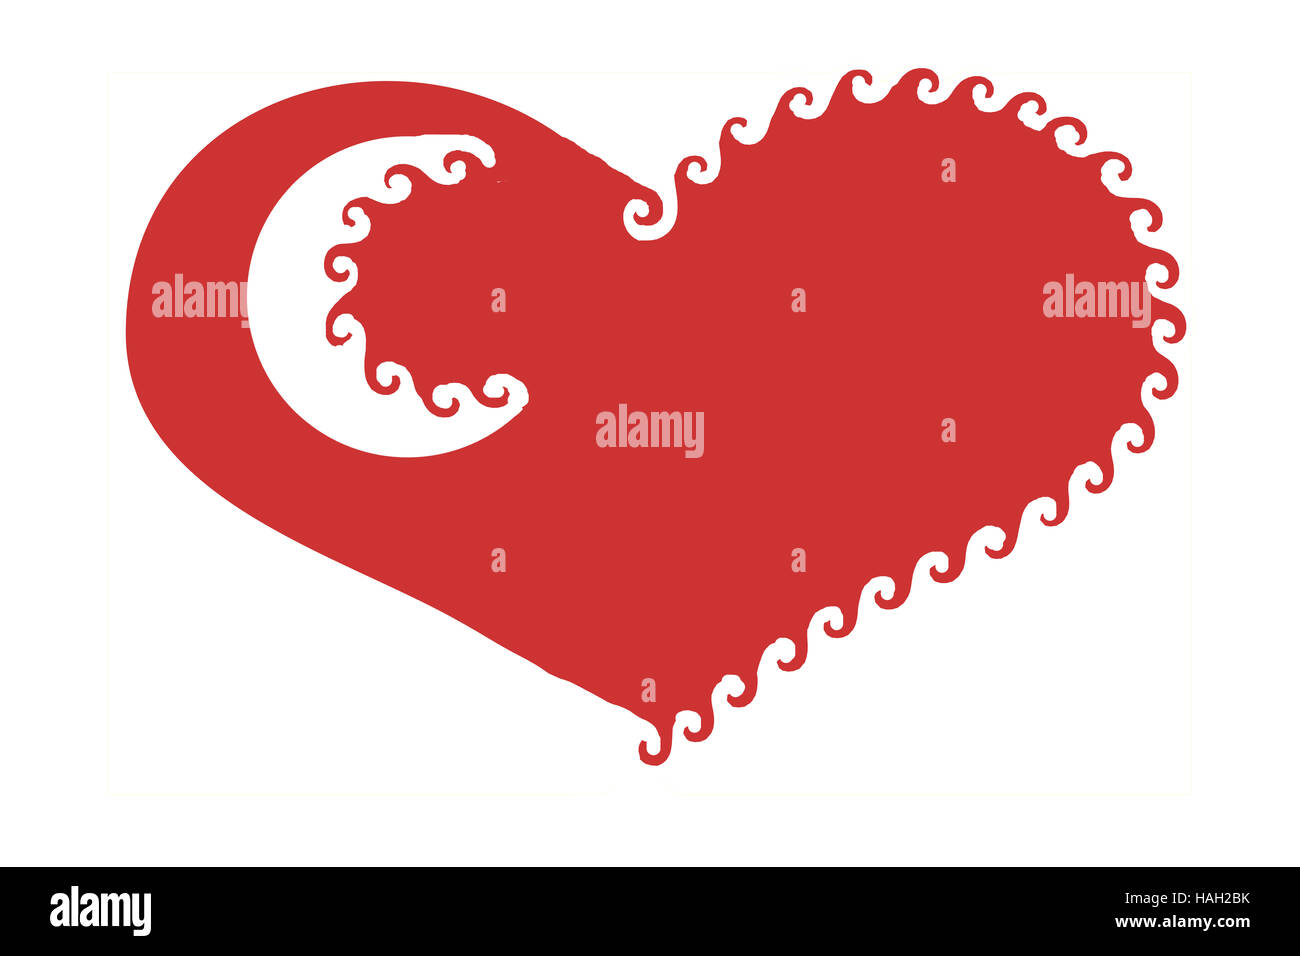 Semplice, elegante e discreta, stilizzata cuore rosso illustrazione con eleganti volute e una mezzaluna bianca evidenziare isolato Foto Stock